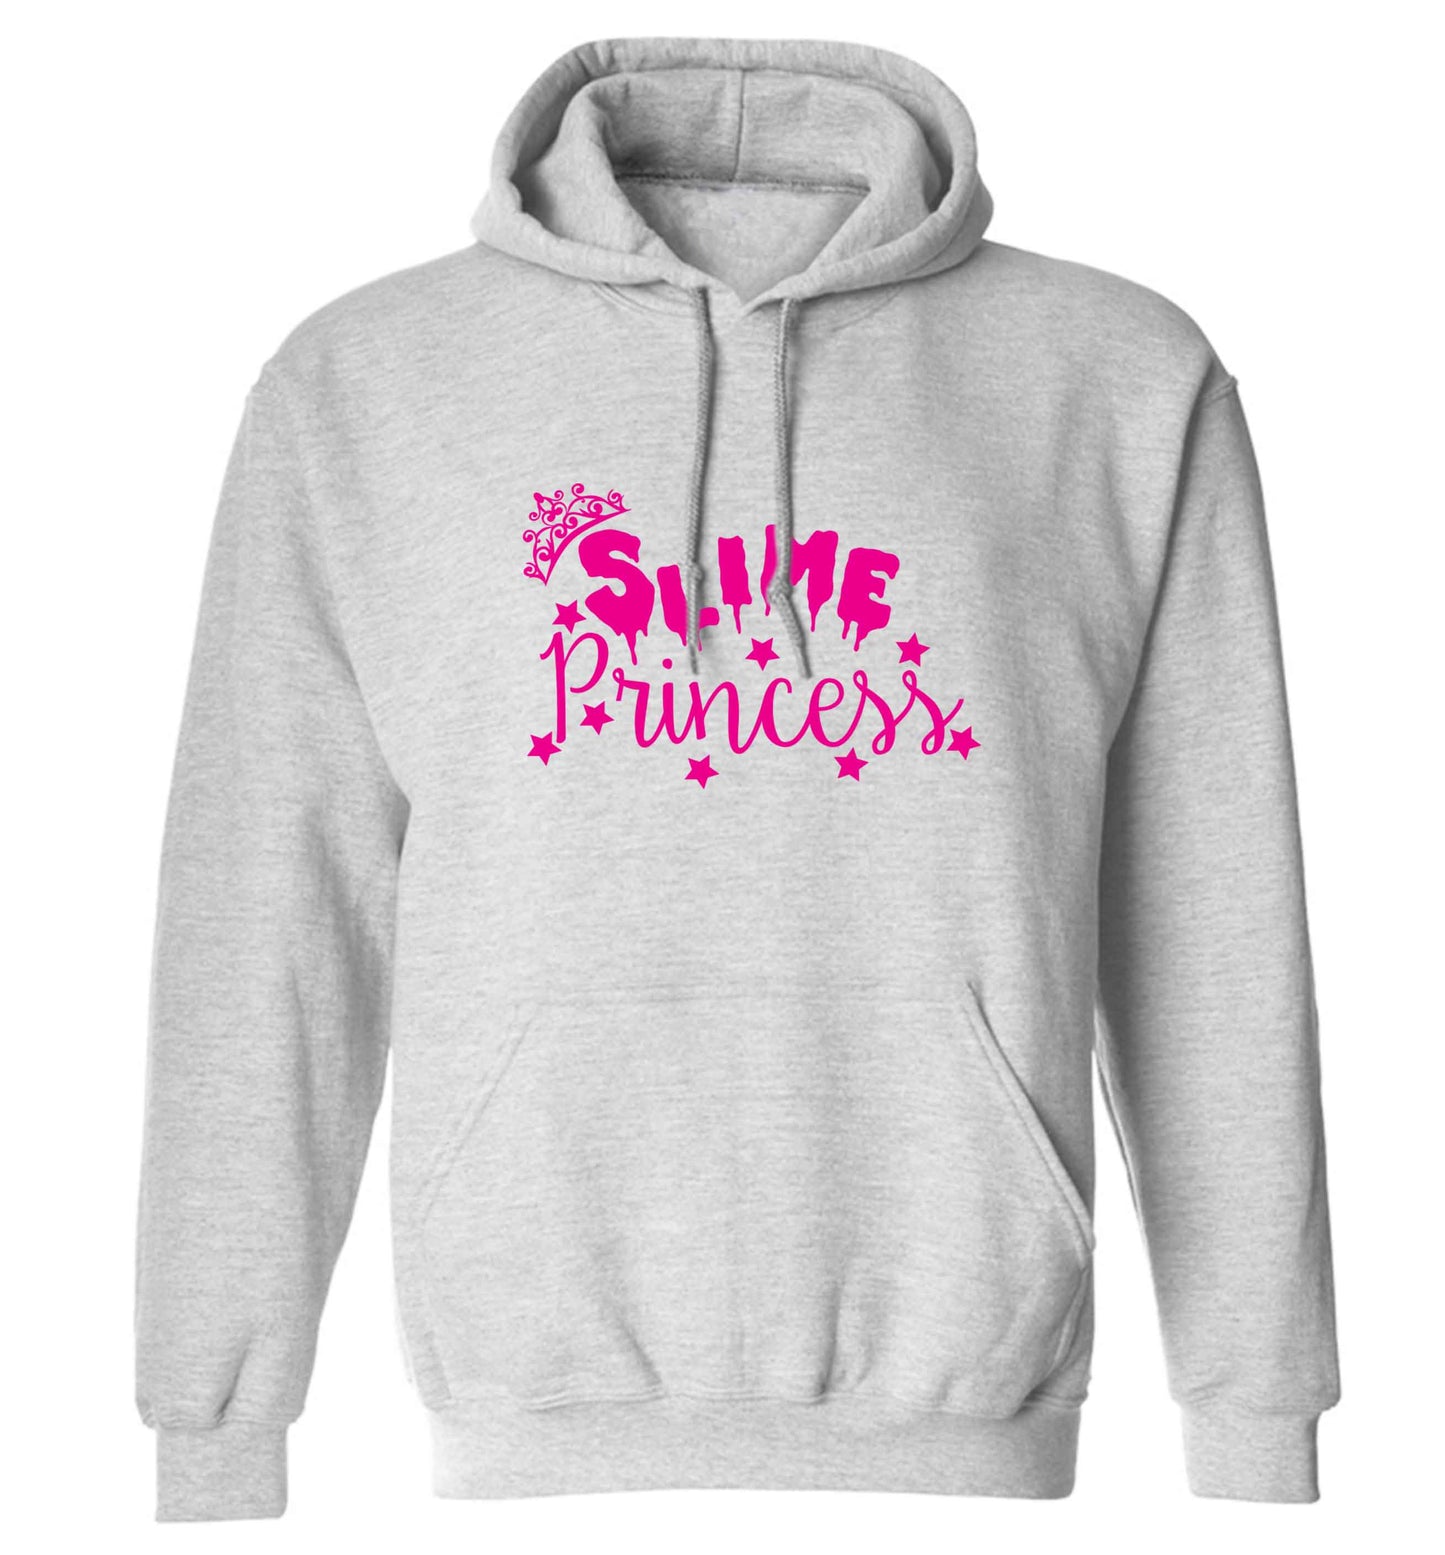 Neon pink slime princess adults unisex grey hoodie 2XL